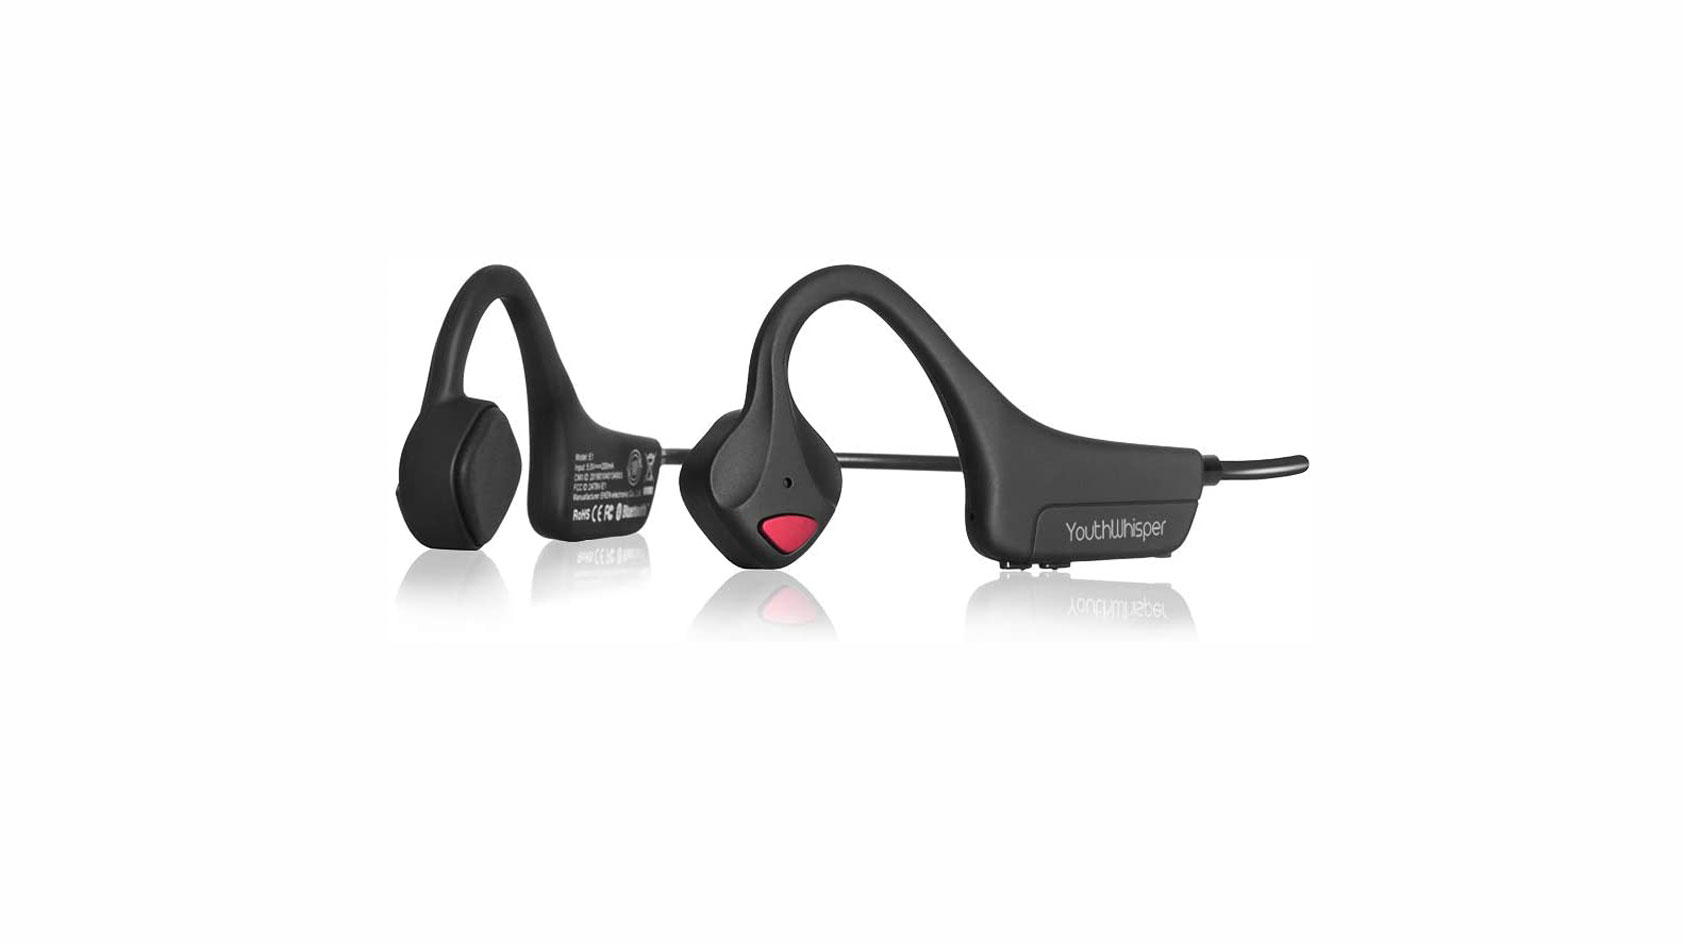 Product image of Youthwhisper bone conduction headphones on a white background